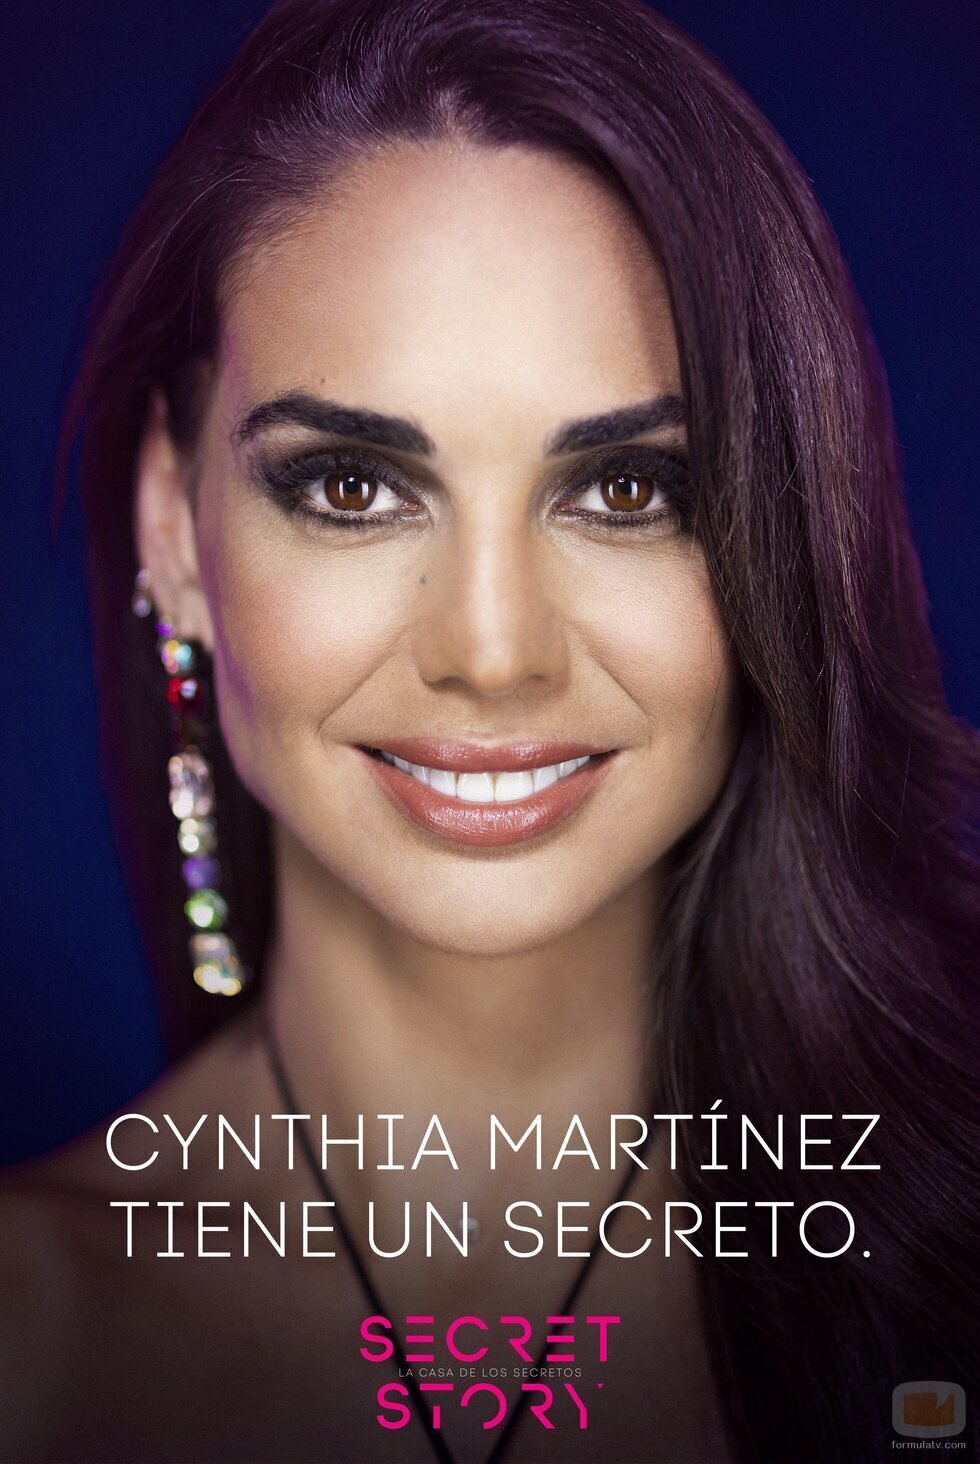 Cynthia Martínez, concursante primera edición 'Secret Story'